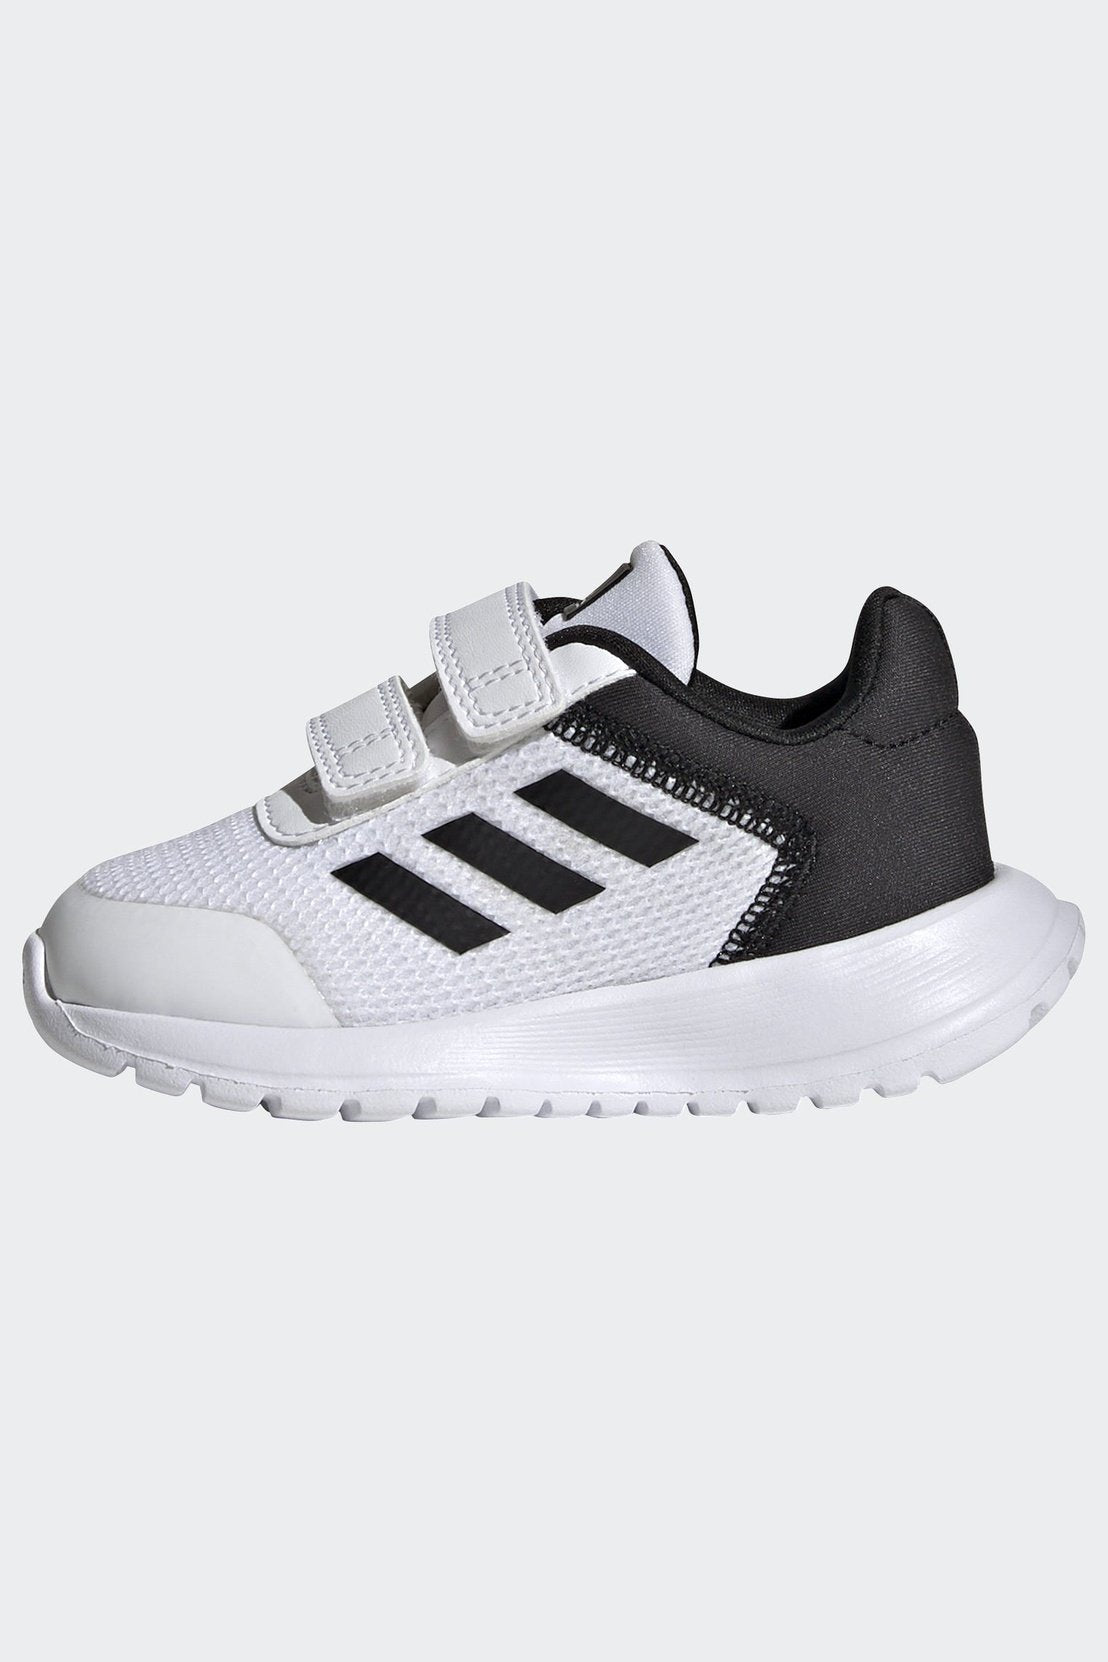 נעלי ספורט לילדים TENSAUR RUN  בצבע לבן ושחור